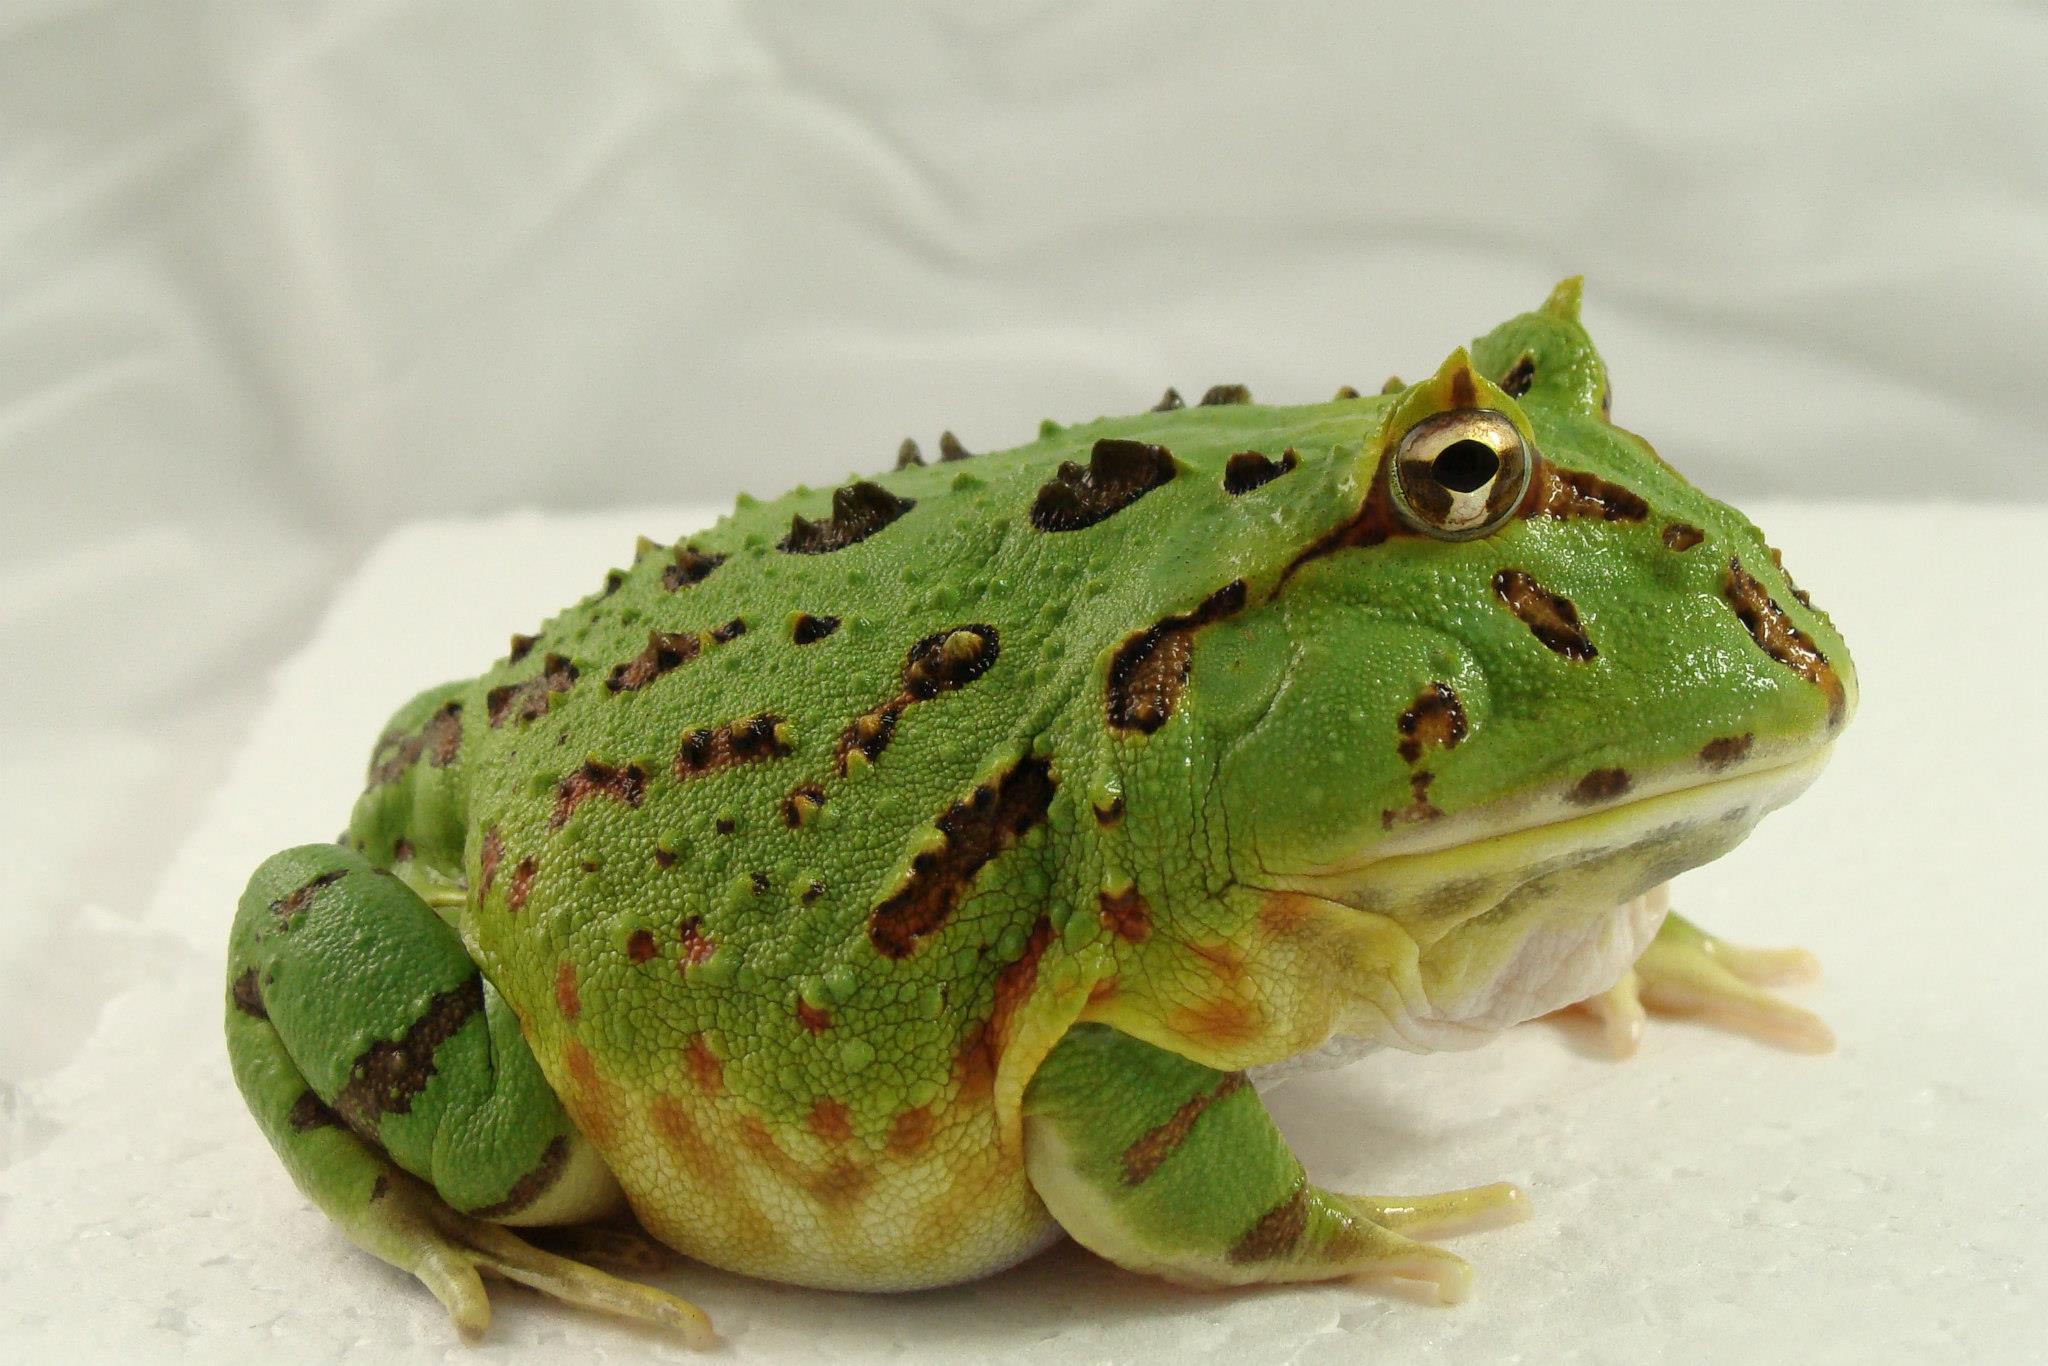 阿根廷角蛙)苏里南角蛙 ceratophrys cornuta (亚马逊角蛙,霸王角蛙)